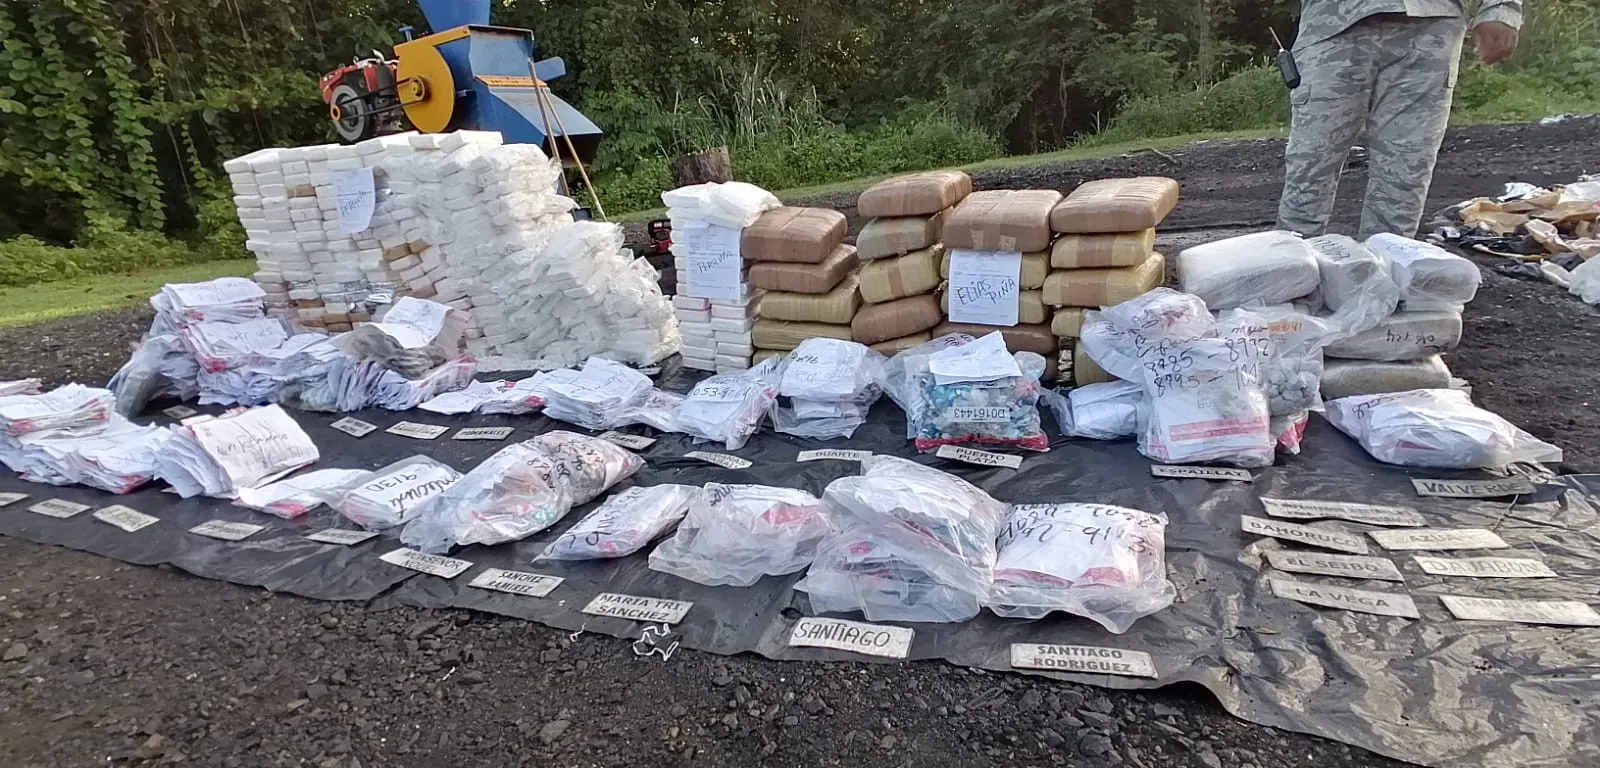 Procuraduría incinera 355 kilogramos de drogas confiscadas en distintas localidades